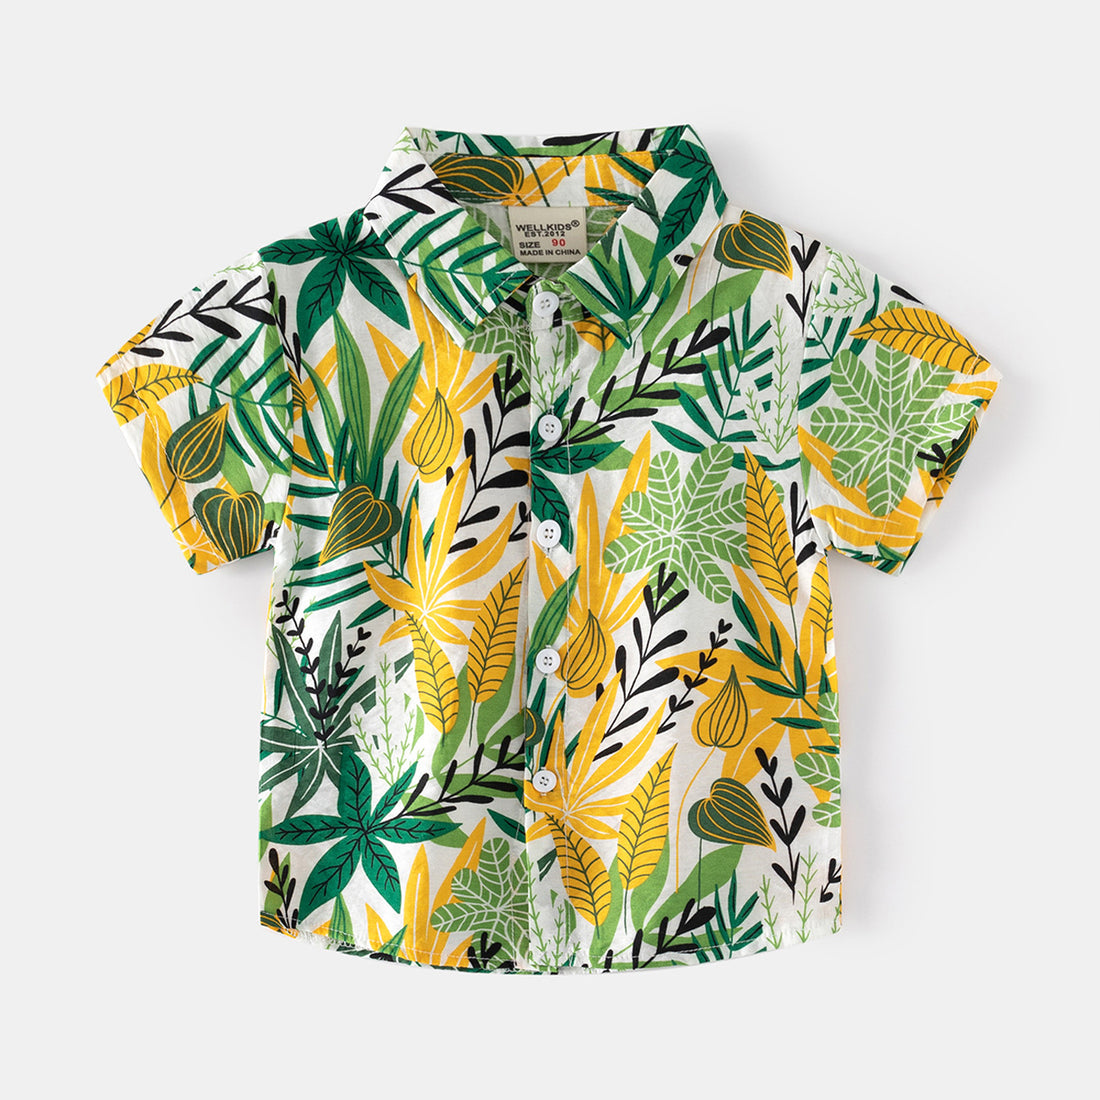 [5131018] - Baju Atasan Kemeja Hawai Fashion Import Anak Laki-Laki - Motif Various Leaves